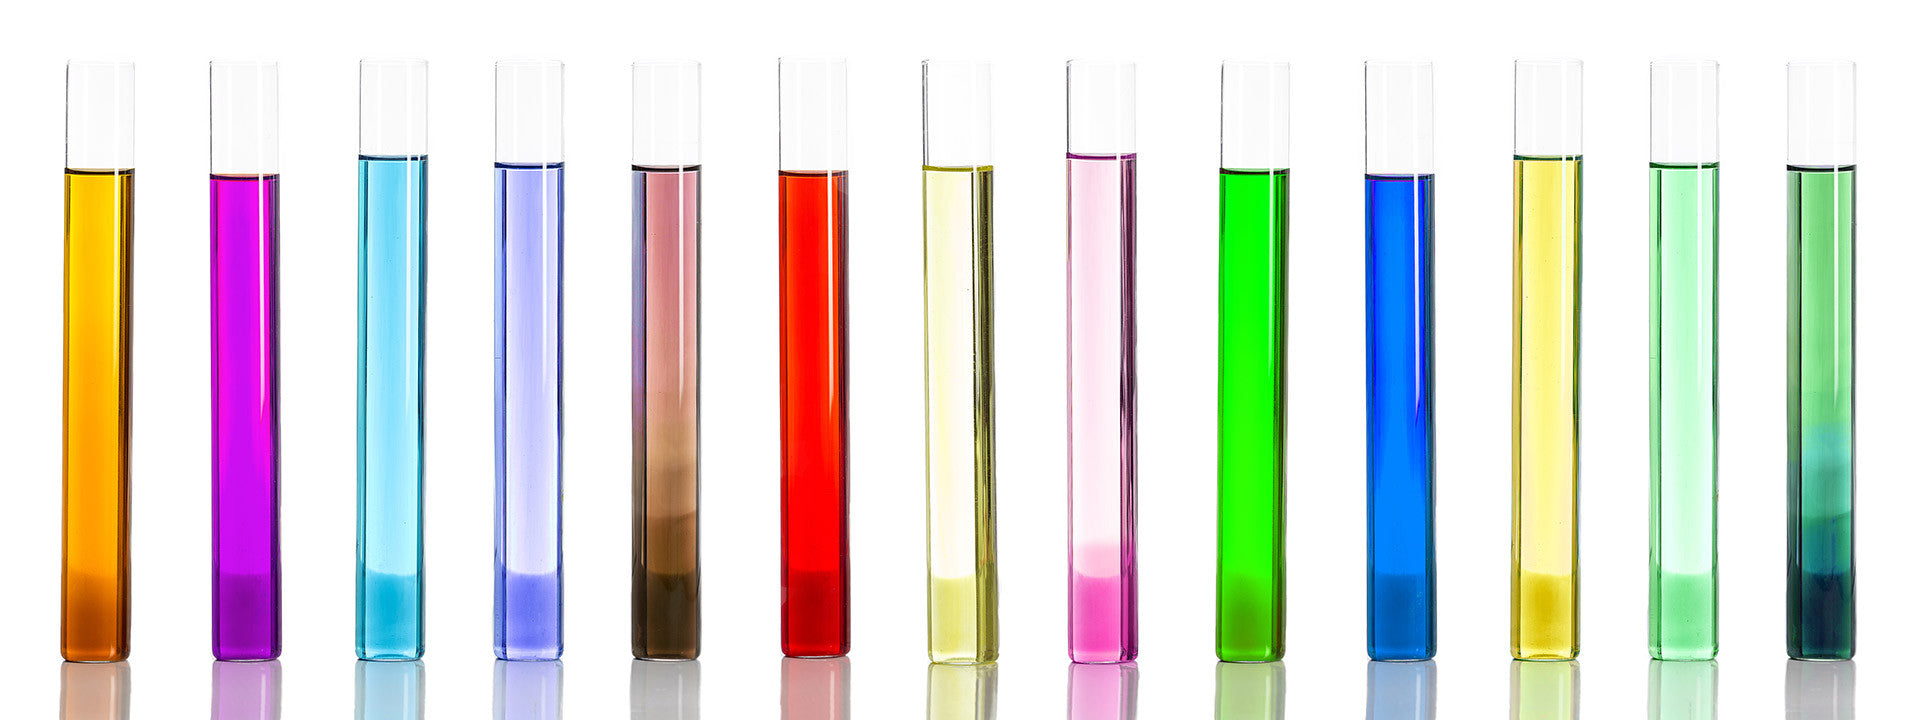 Testosterone SEMI-QUANTITATIVE Test Kit – Colorimetrics